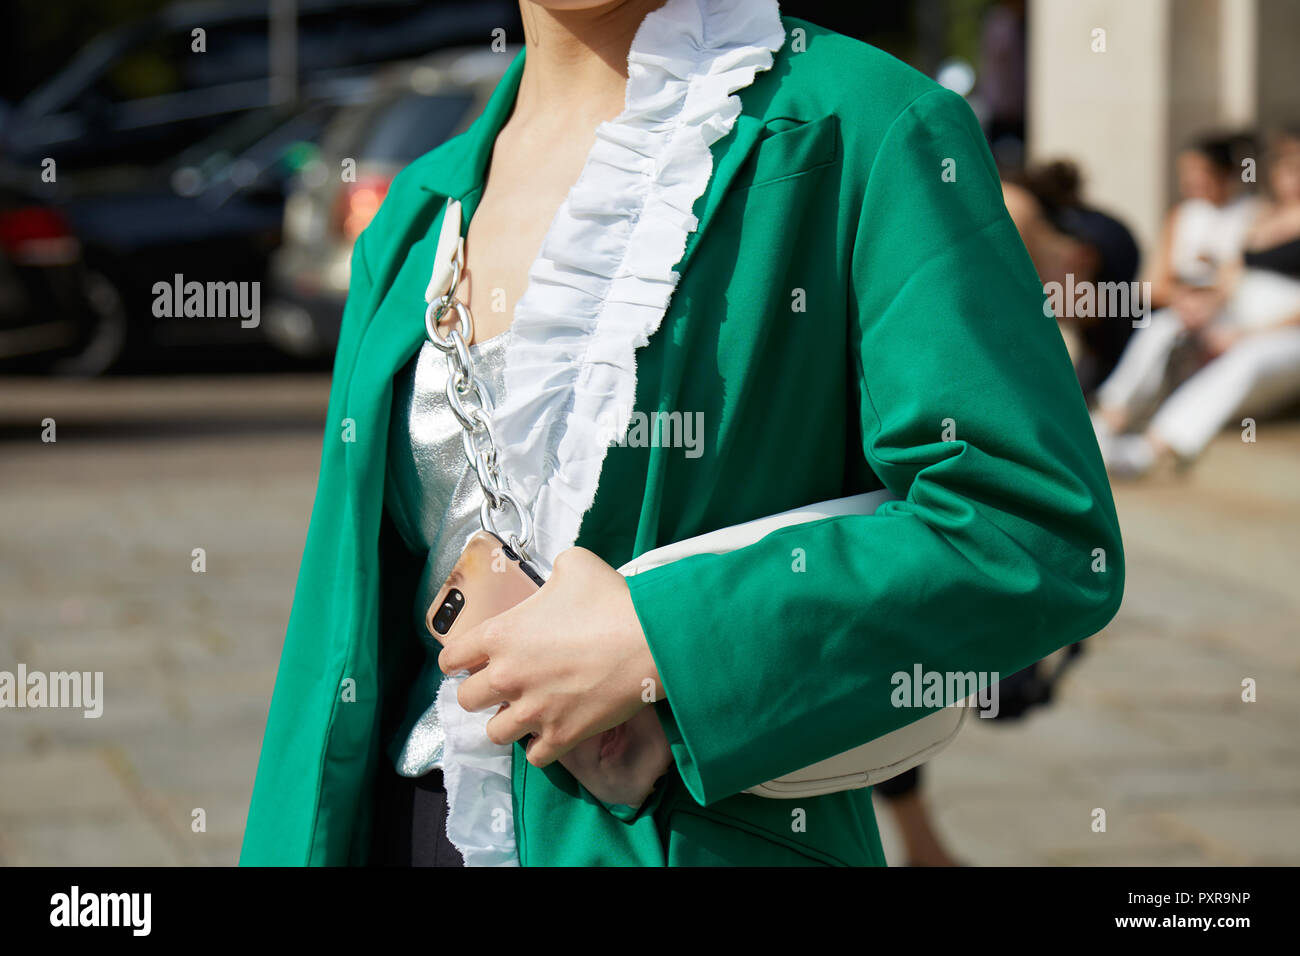 Milán, Italia - 22 de septiembre de 2018: Mujer con chaqueta verde y camisa  blanca y plateada